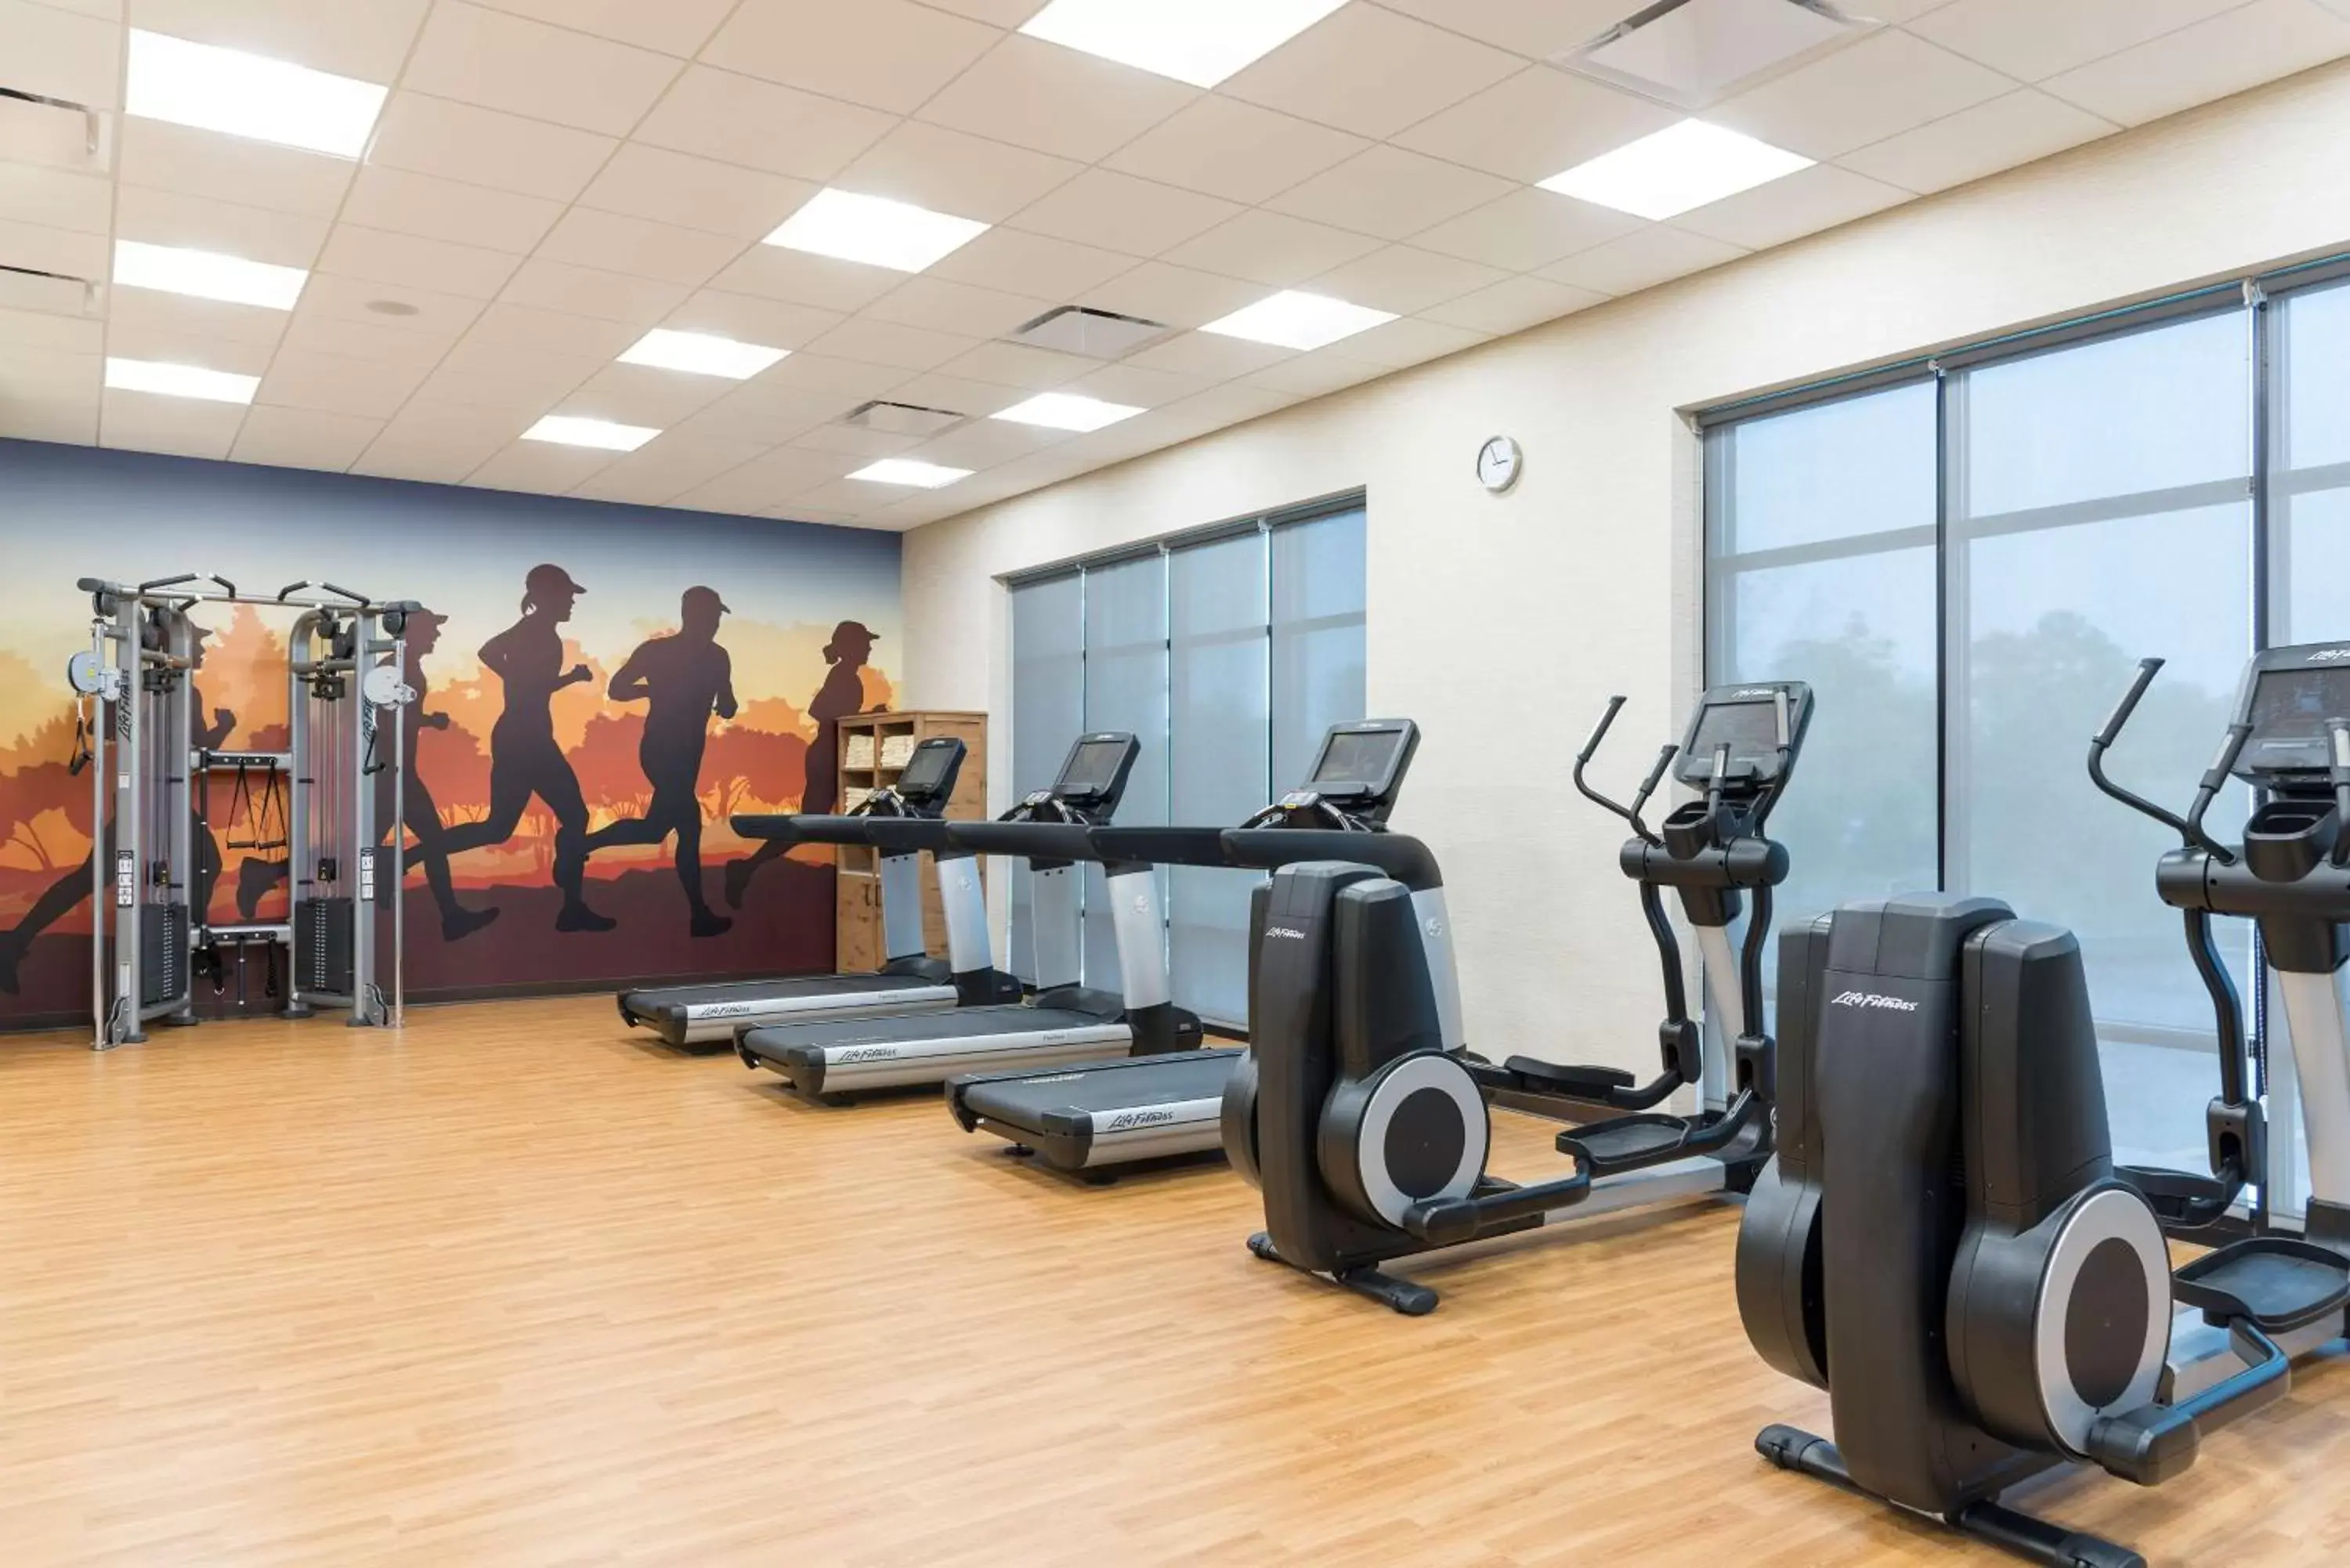 Fitness centre/facilities, Fitness Center/Facilities in Hyatt Place Ann Arbor